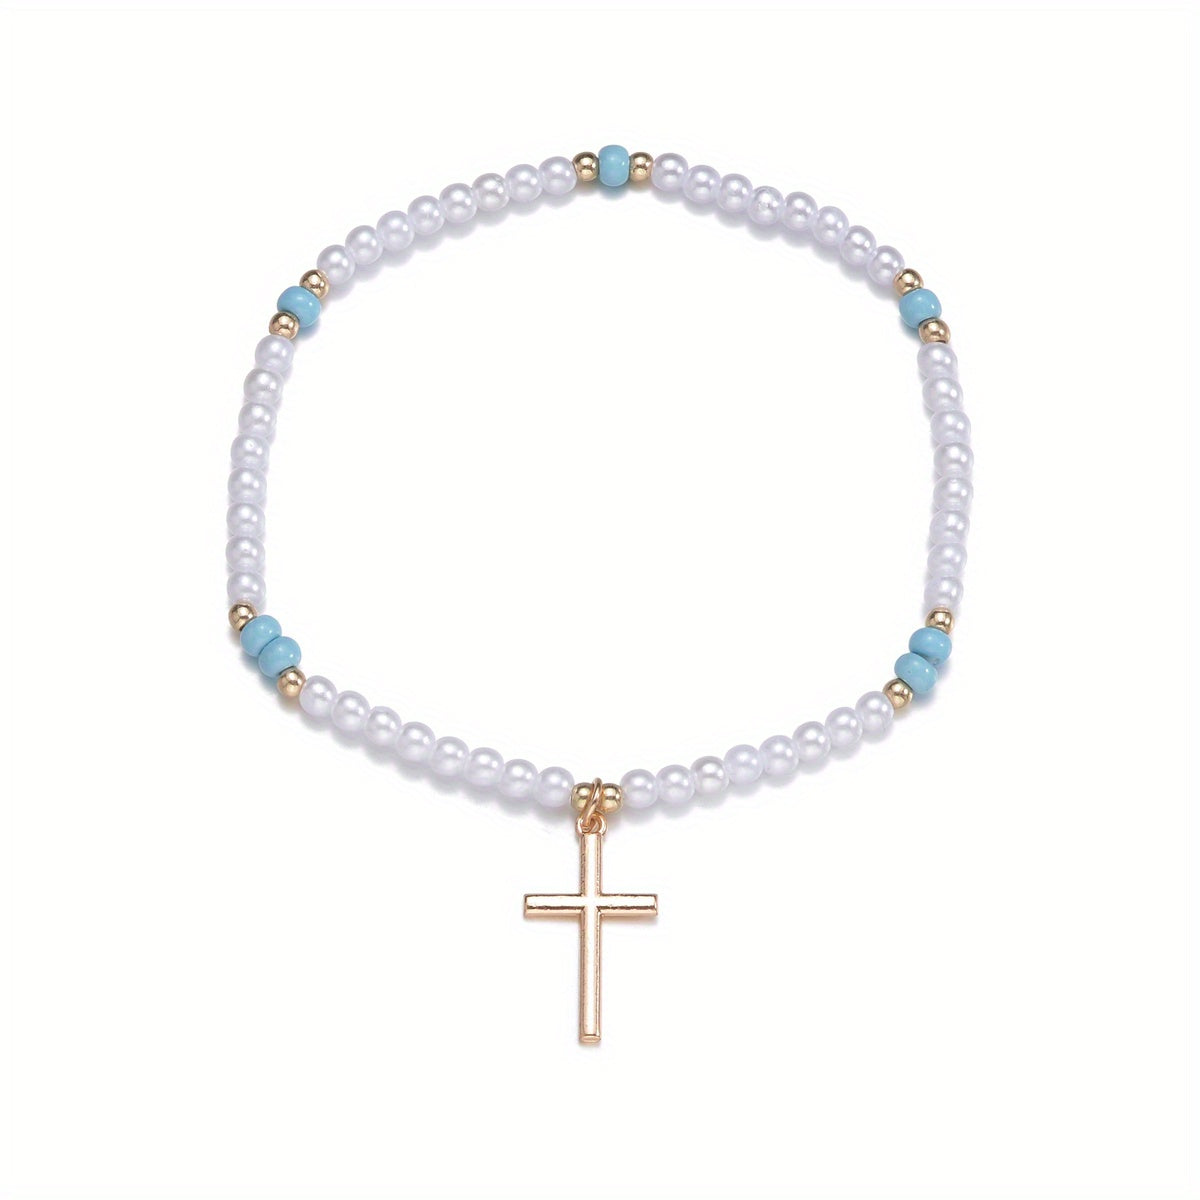 Cross Shape Pendant Beaded Anklet With Mini Faux Pearls Beads Elegant Ankle Bracelet For Women Girls